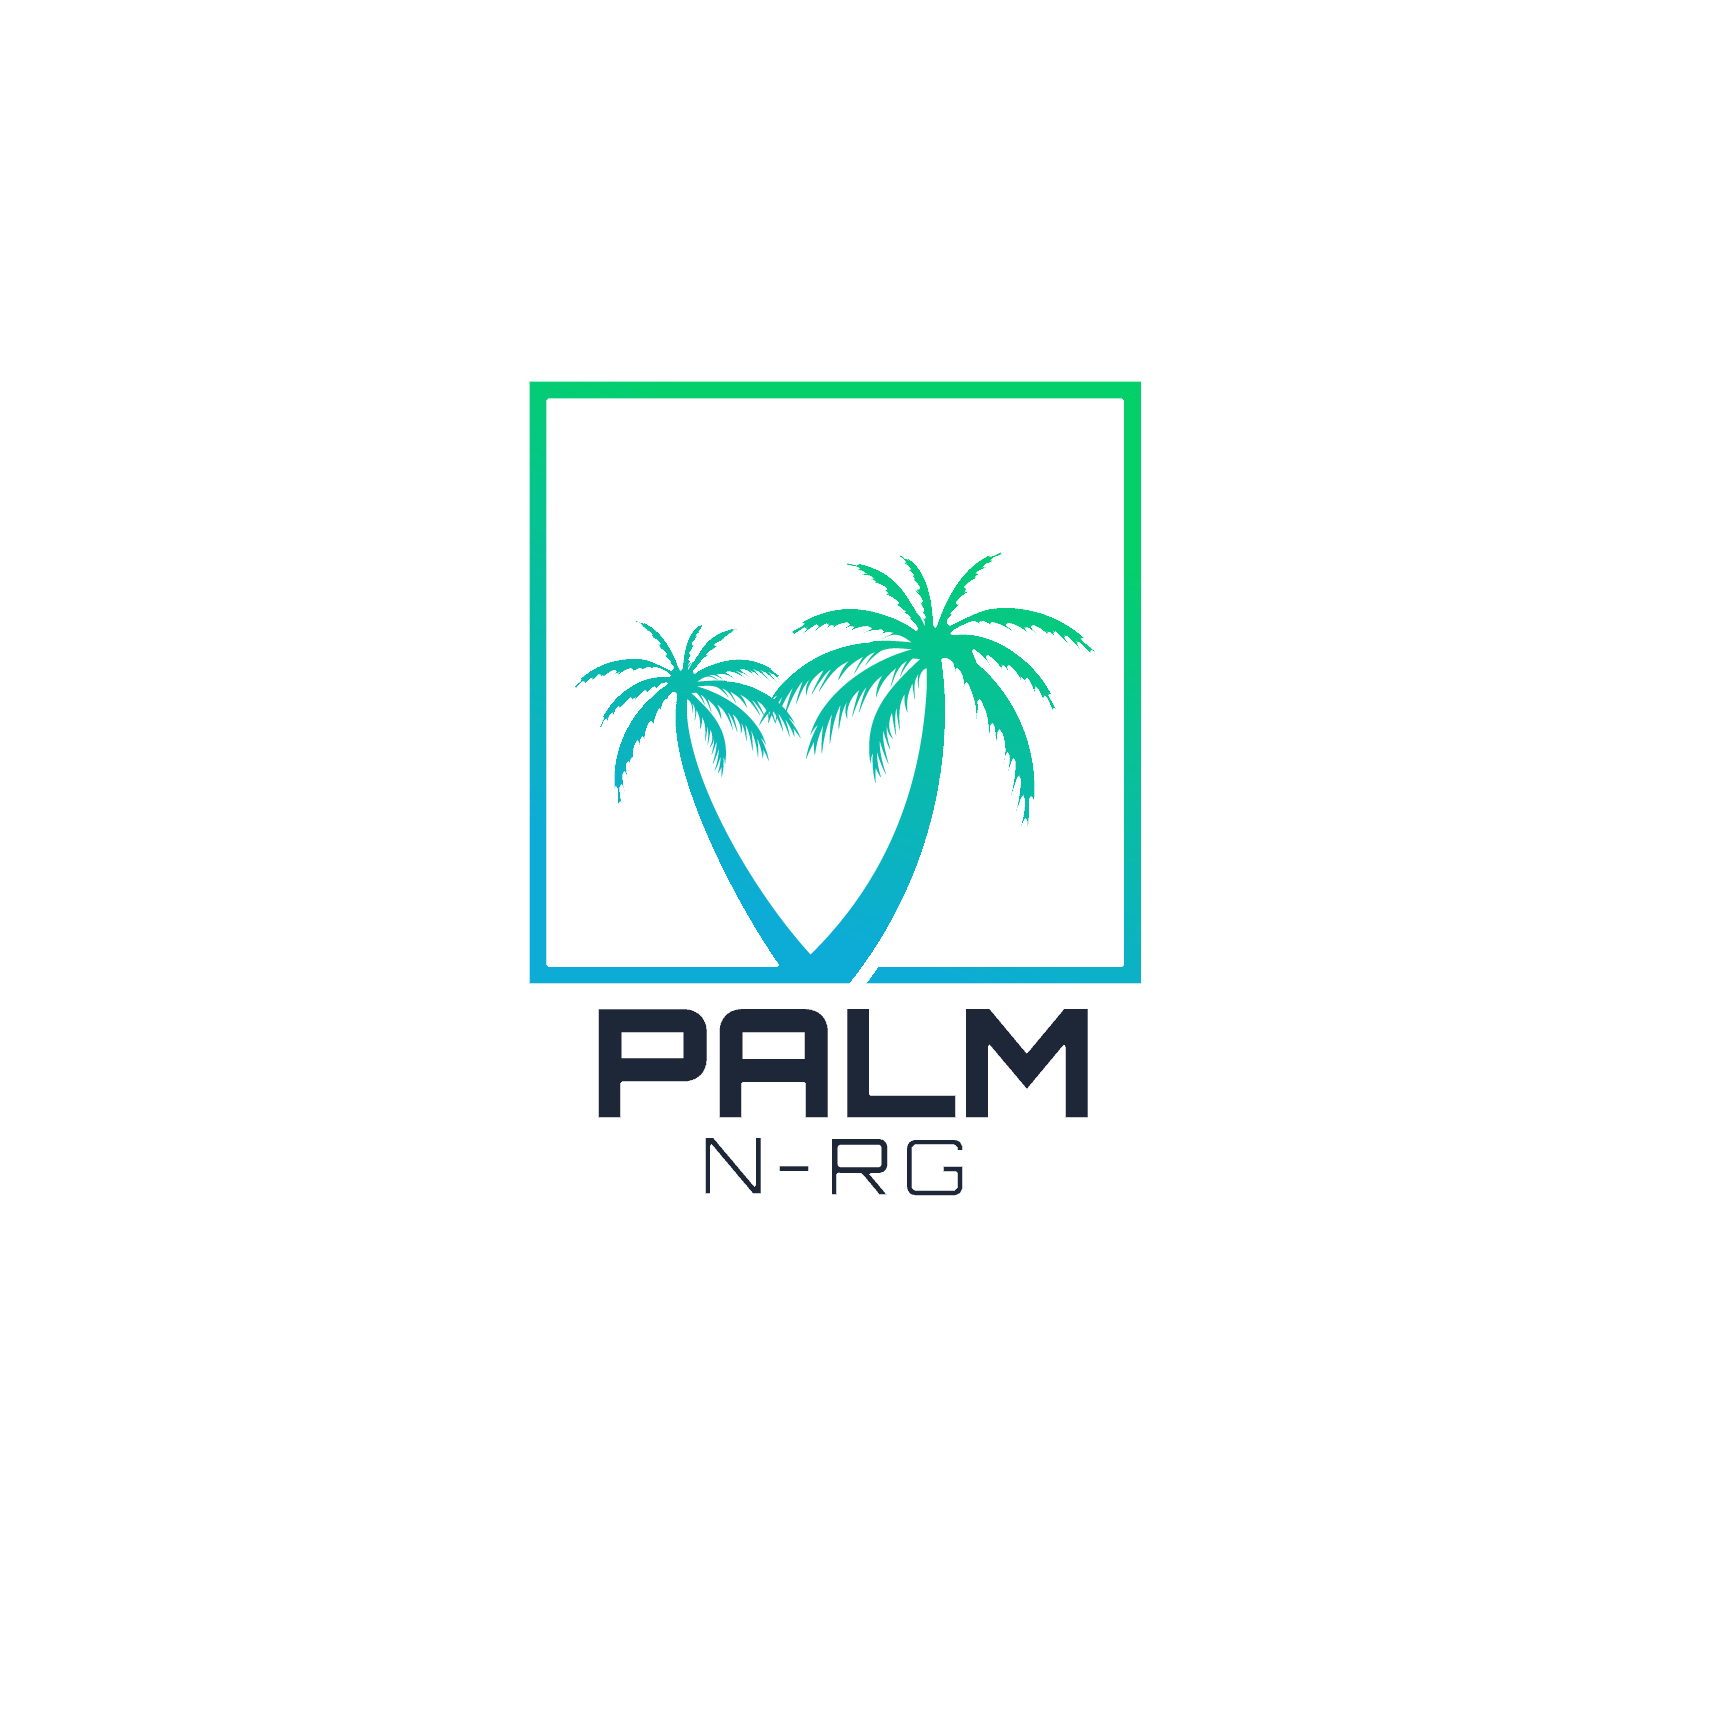 Palm NRG